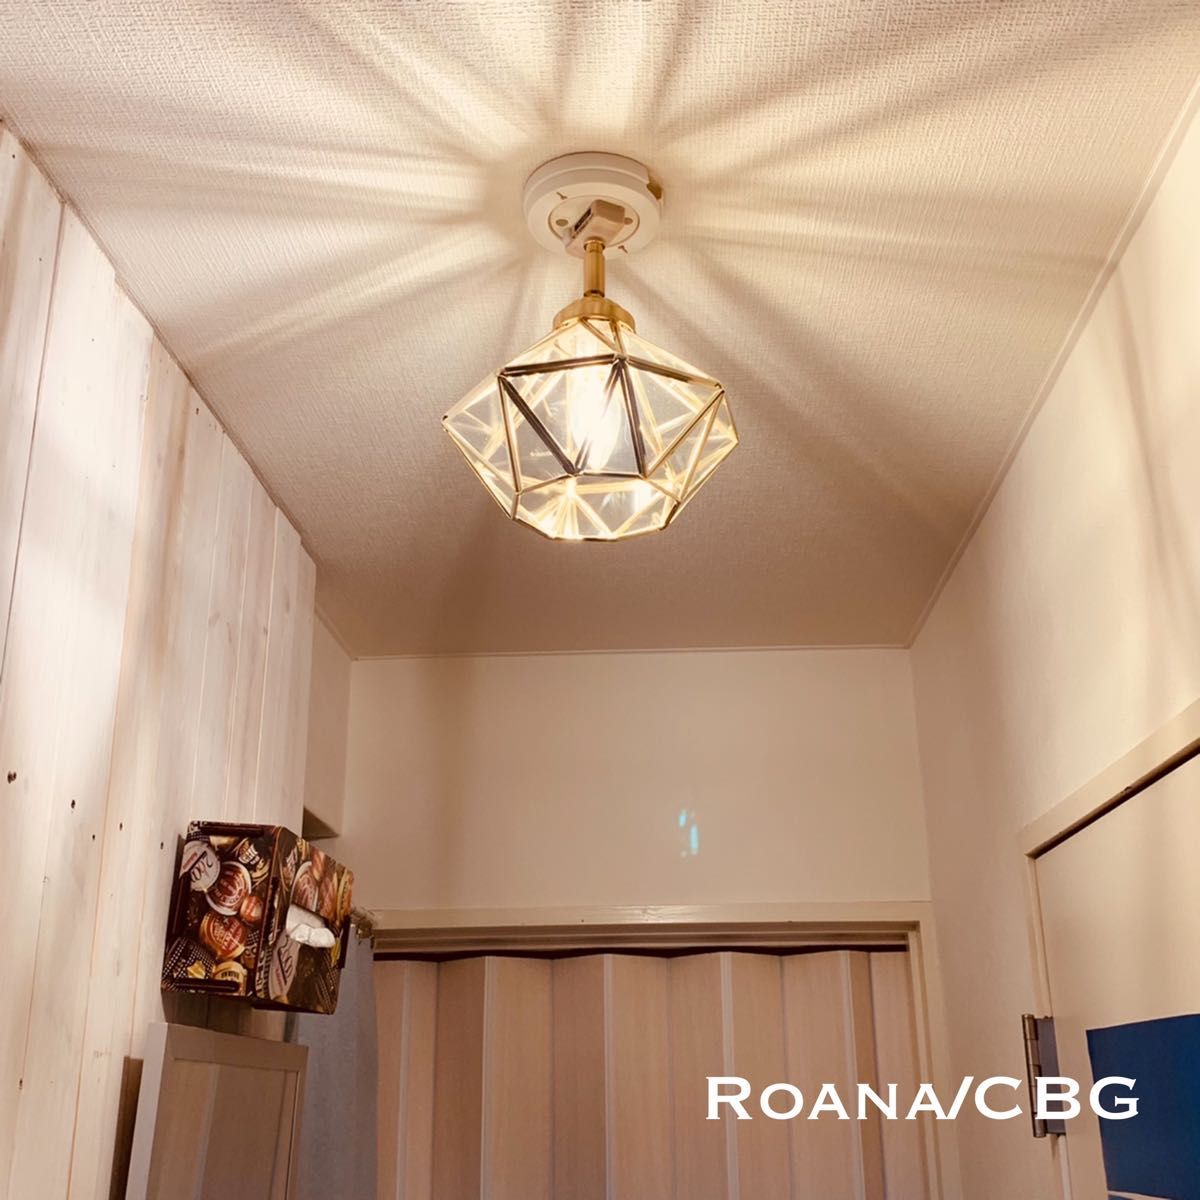 天井照明 Roana/C シーリングライト カットガラス ランプシェード E17ソケット 簡単取付 LED照明 インテリア 照明